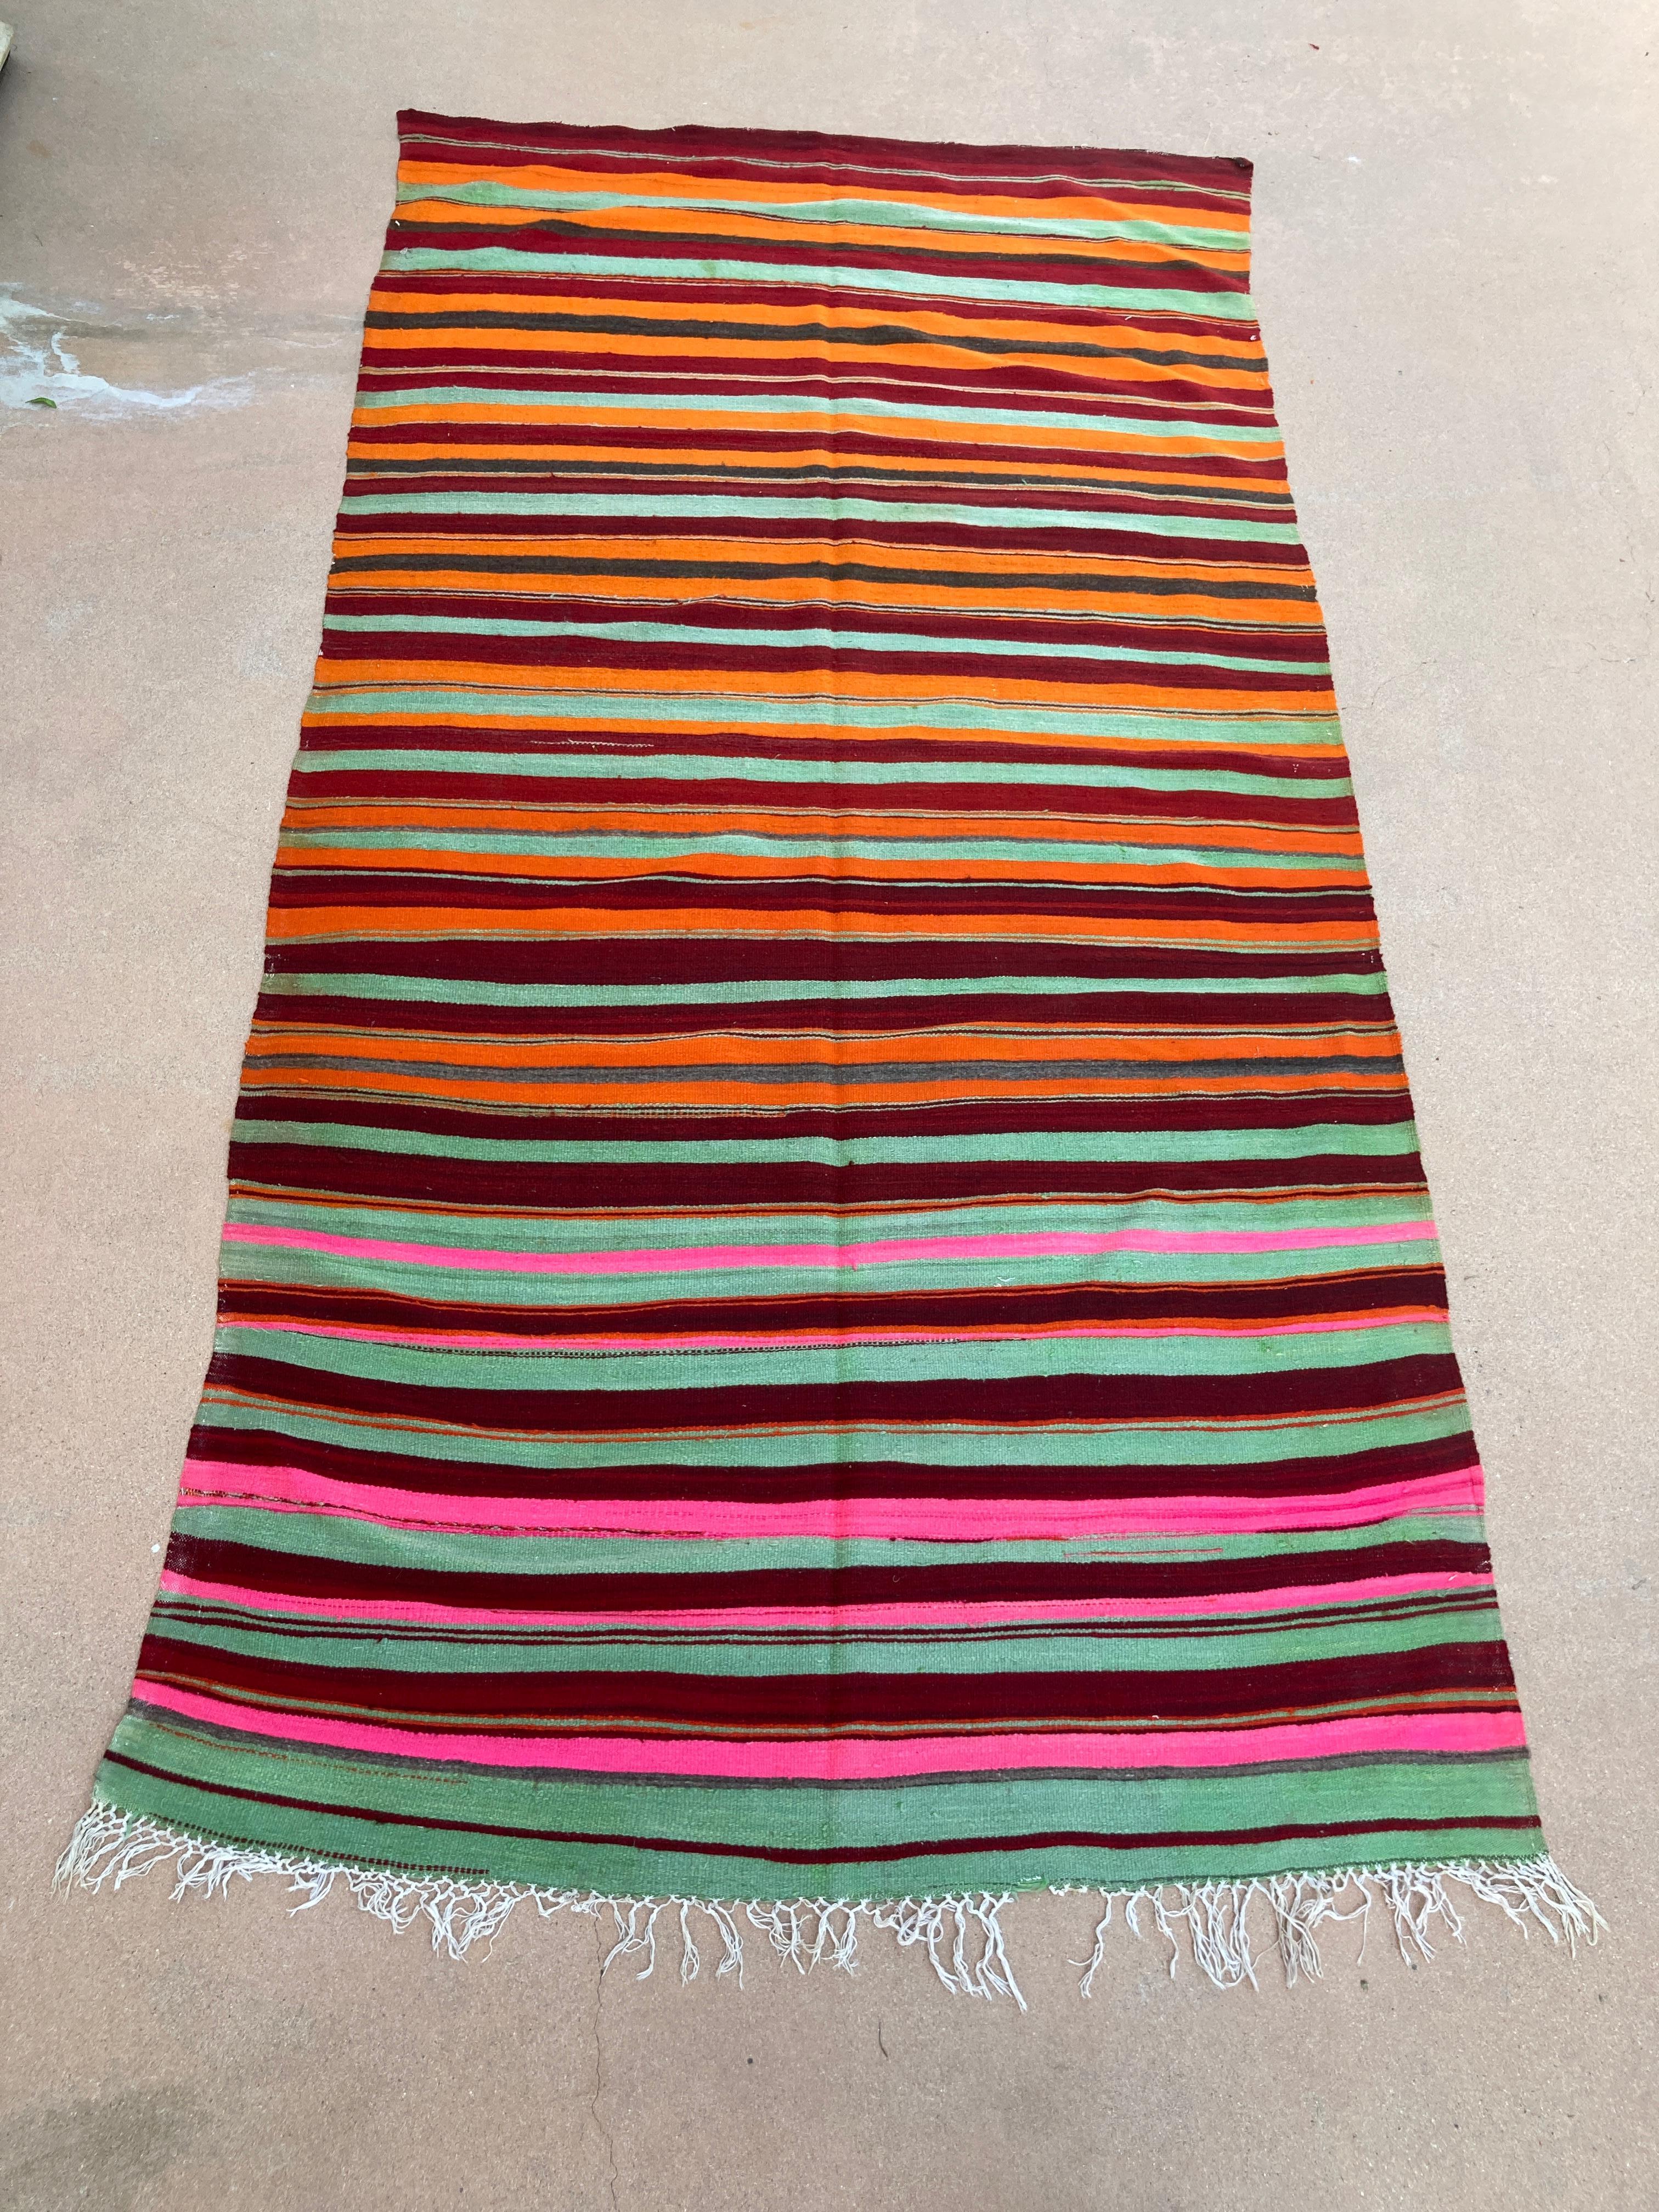 Vintage Marokkanischer flachgewebter Kilim Teppich, Nordafrika.
Großer marokkanischer Teppich im Vintage-Stil, der von Berberfrauen in Marokko für den Eigengebrauch handgewebt wurde.
Dieser Teppich wurde in Flachgewebetechnik mit einem linearen